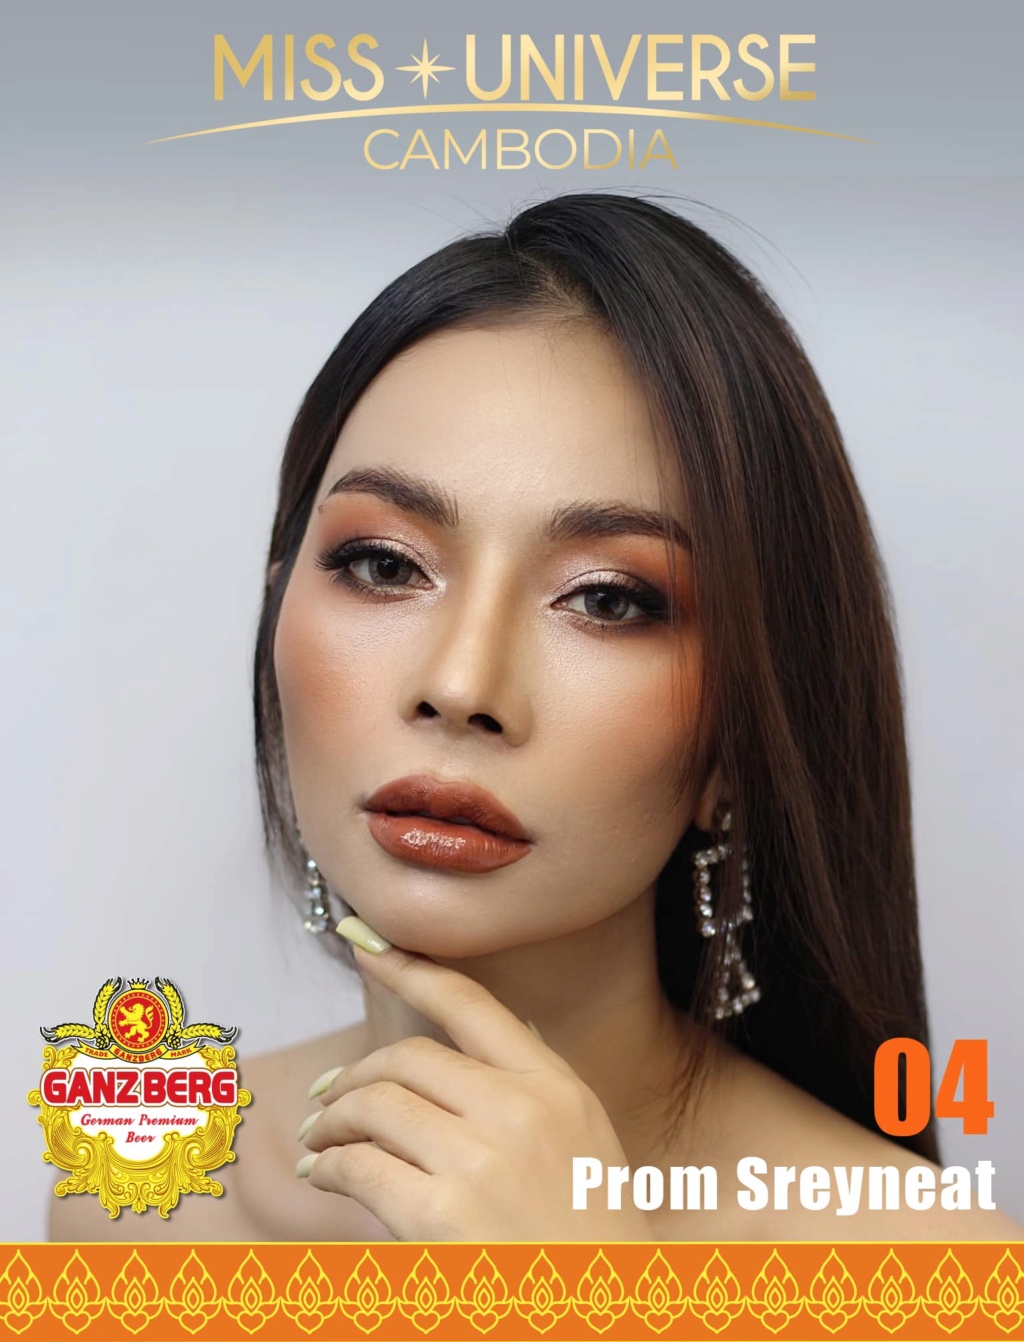 Miss Universe Cambodia 2021 is Ngin Marady 4377